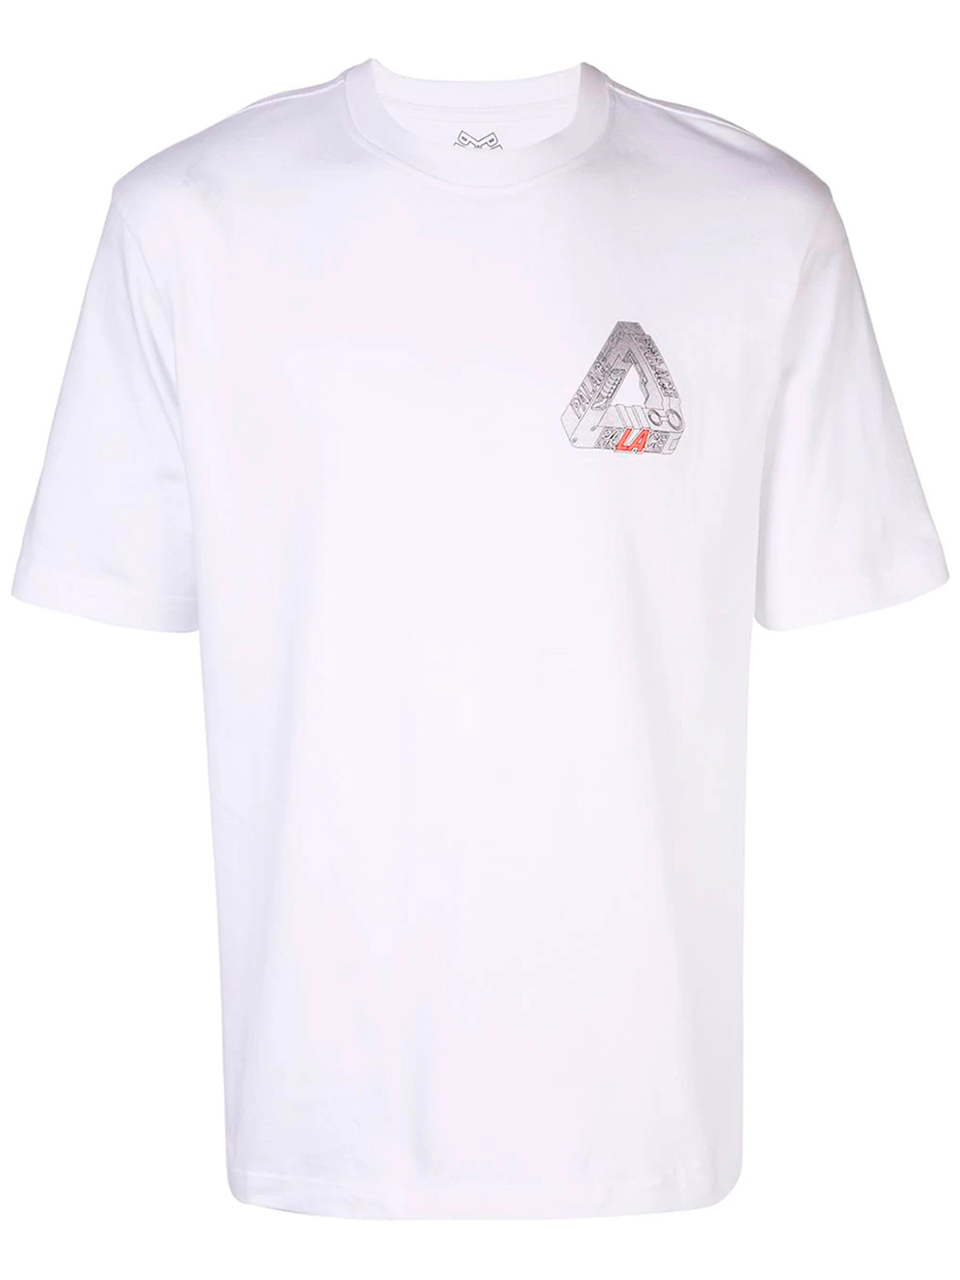 Imagem de: Camiseta Palace Branca com Logo